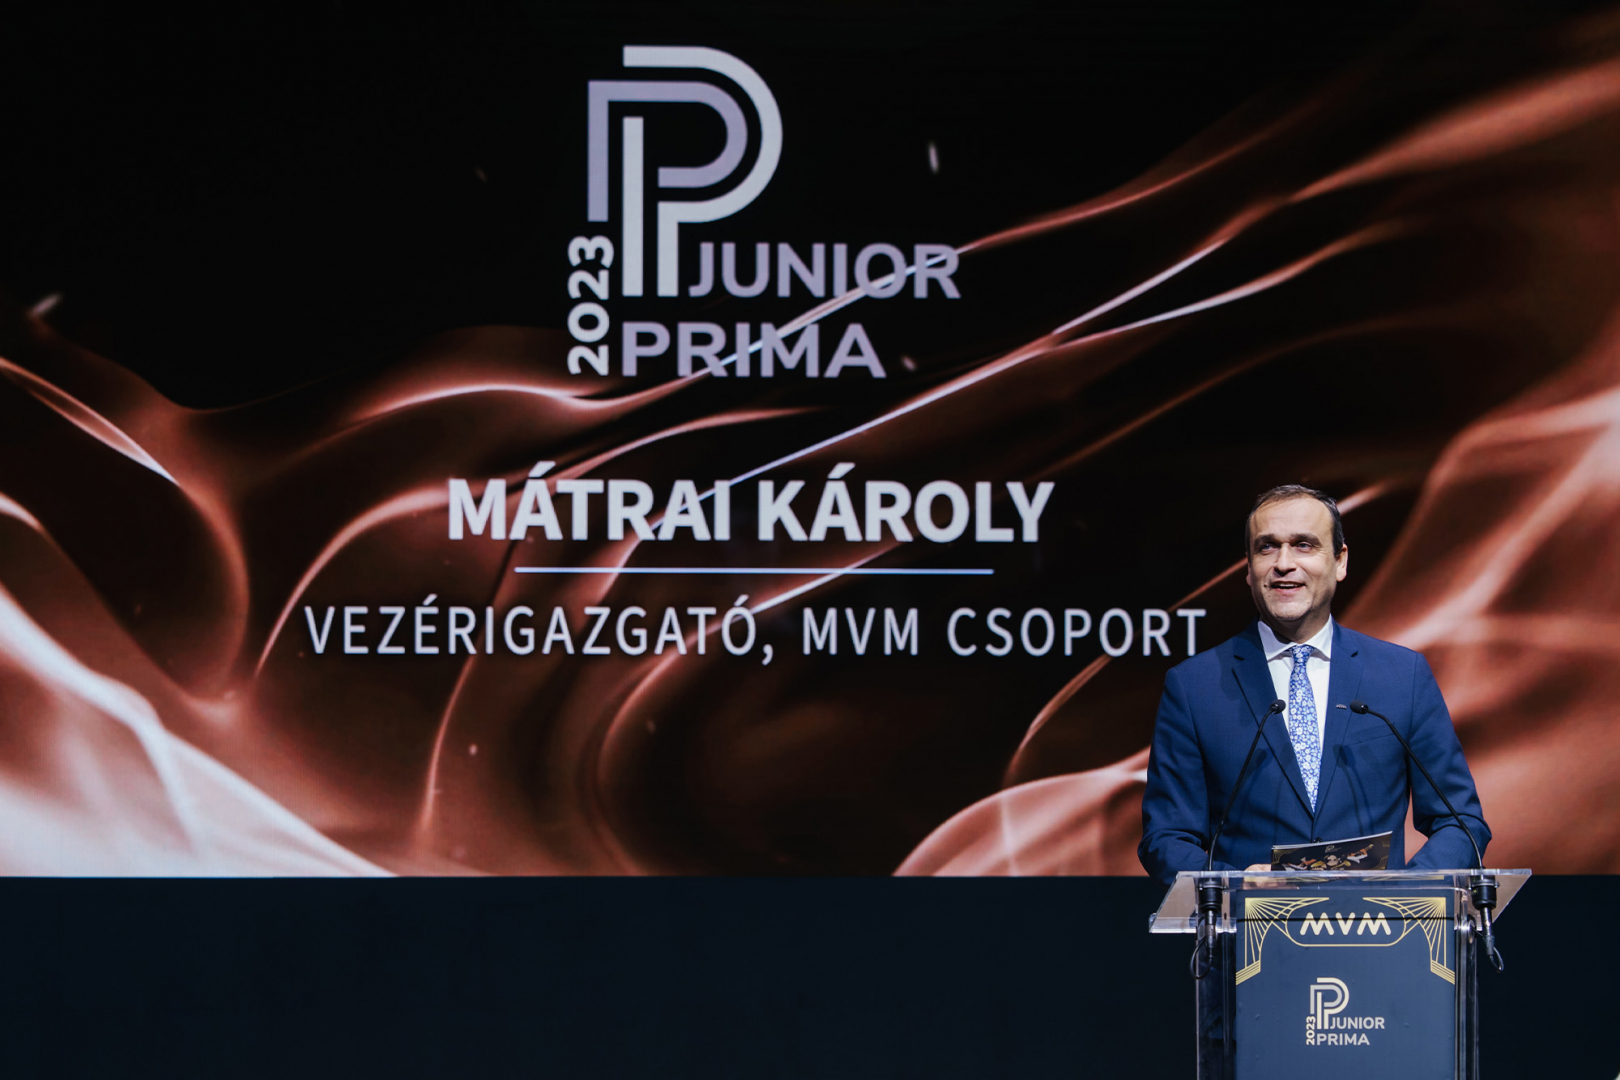 Mátrai Károly, az MVM Csoport vezérigazgatója köszöntötte a díjátadó vendégeit